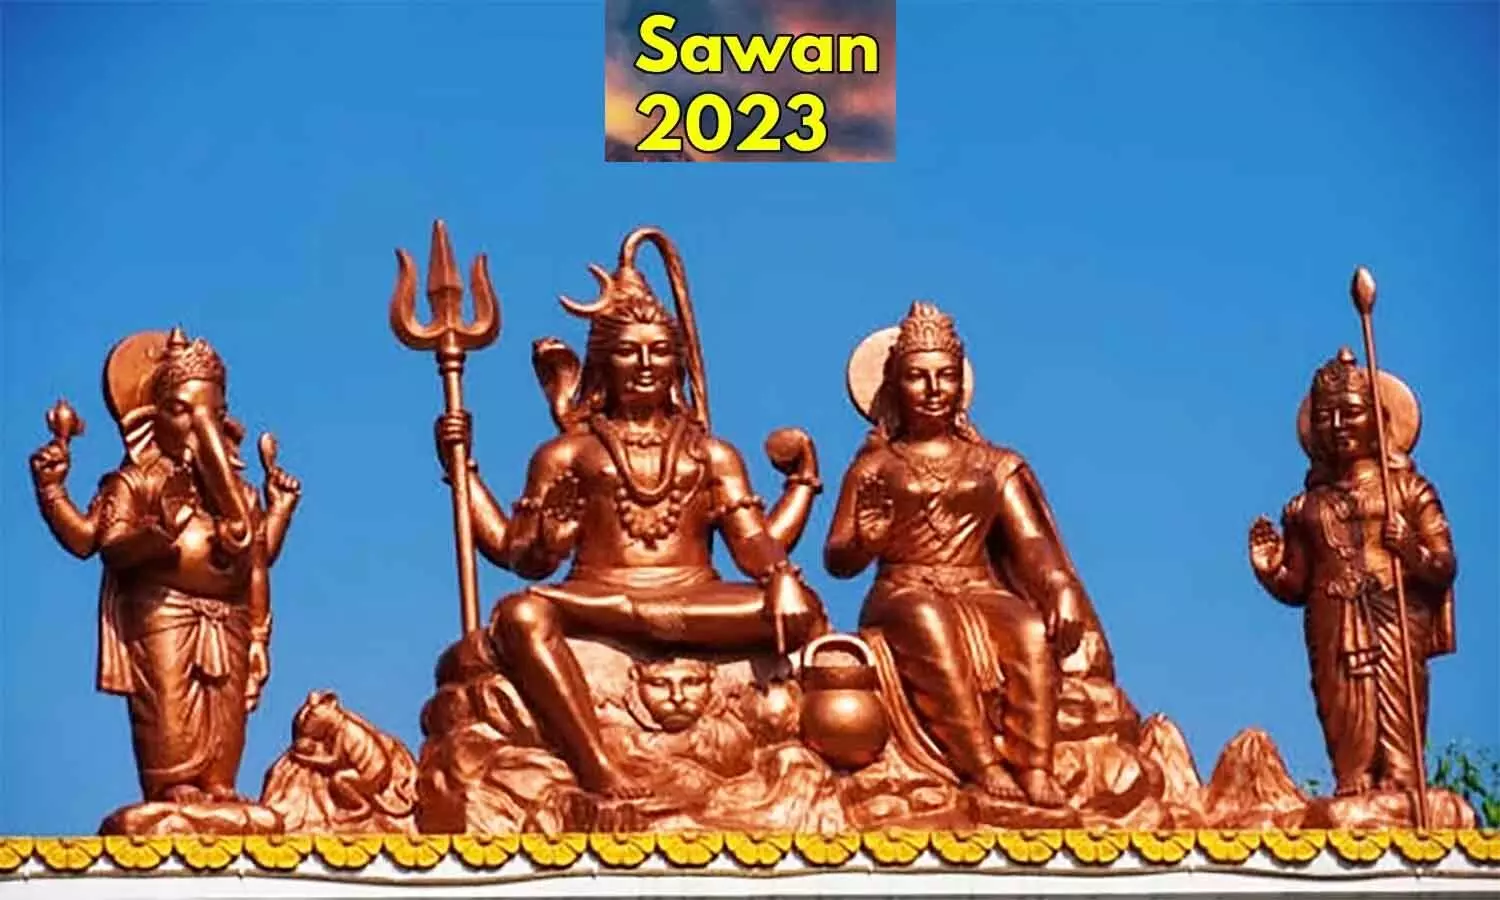 Sawan 2023: सावन माह में रक्षाबंधन, नागपंचमी, हरियाली तीज समेत पड़ेंगे कई व्रत व त्योहार, यहां पर देखें पूरी लिस्ट